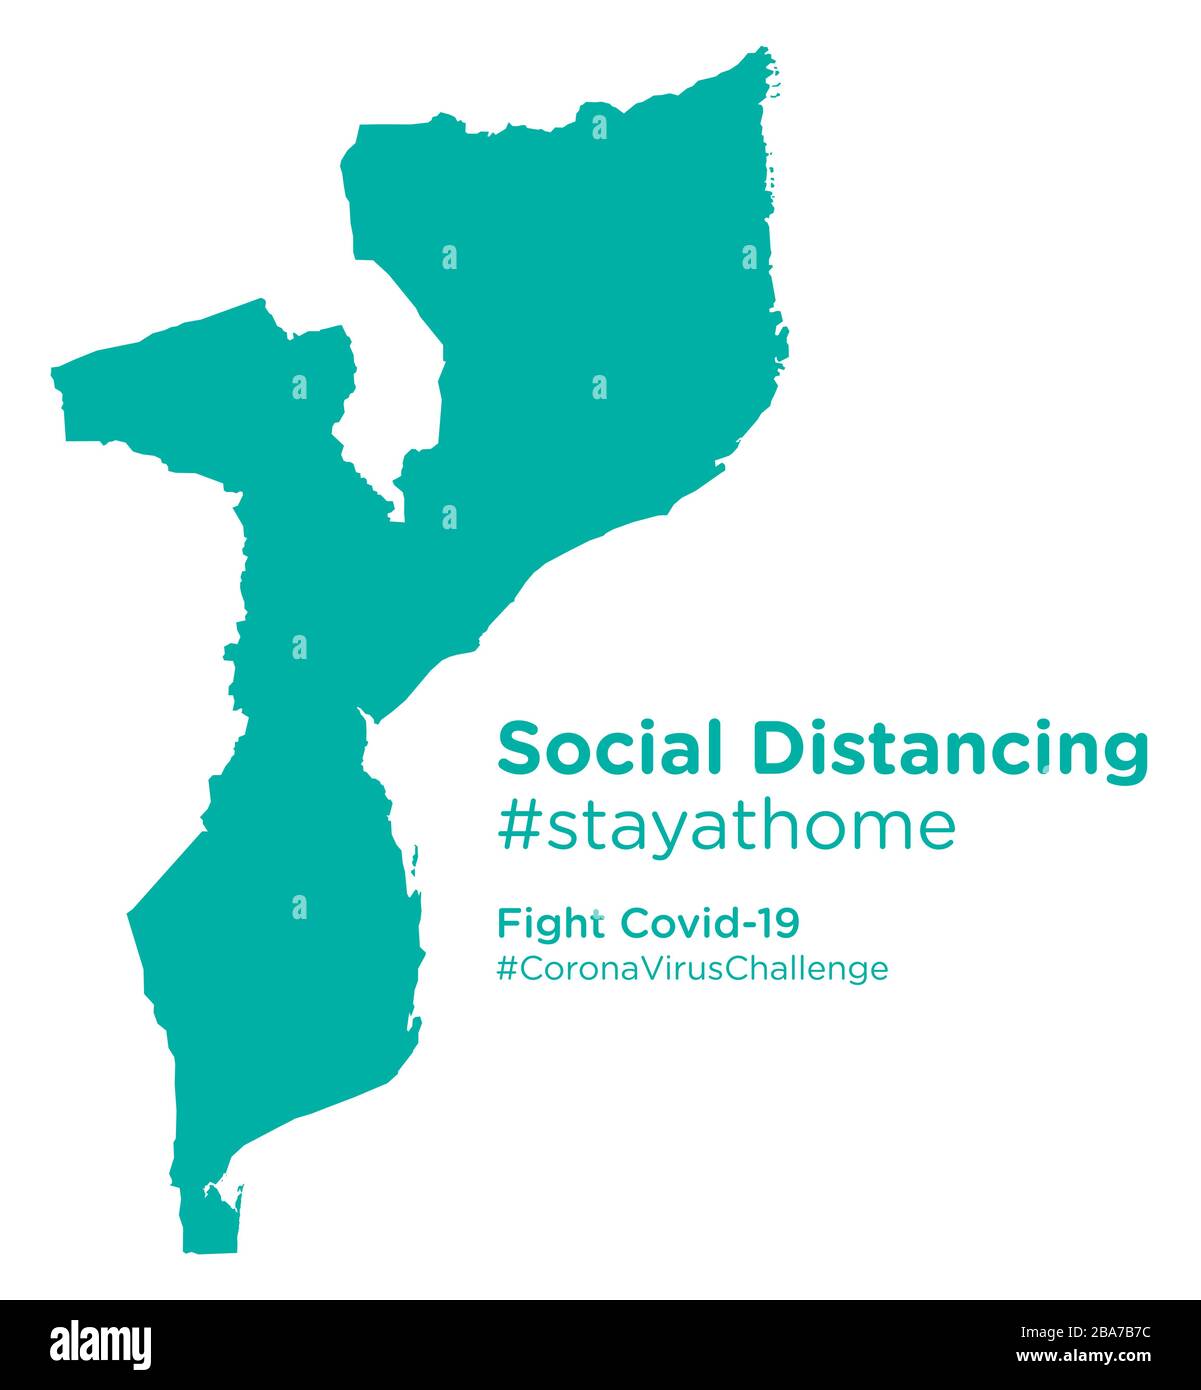 Mozambique carte avec étiquette de stayathome de distancing social Illustration de Vecteur